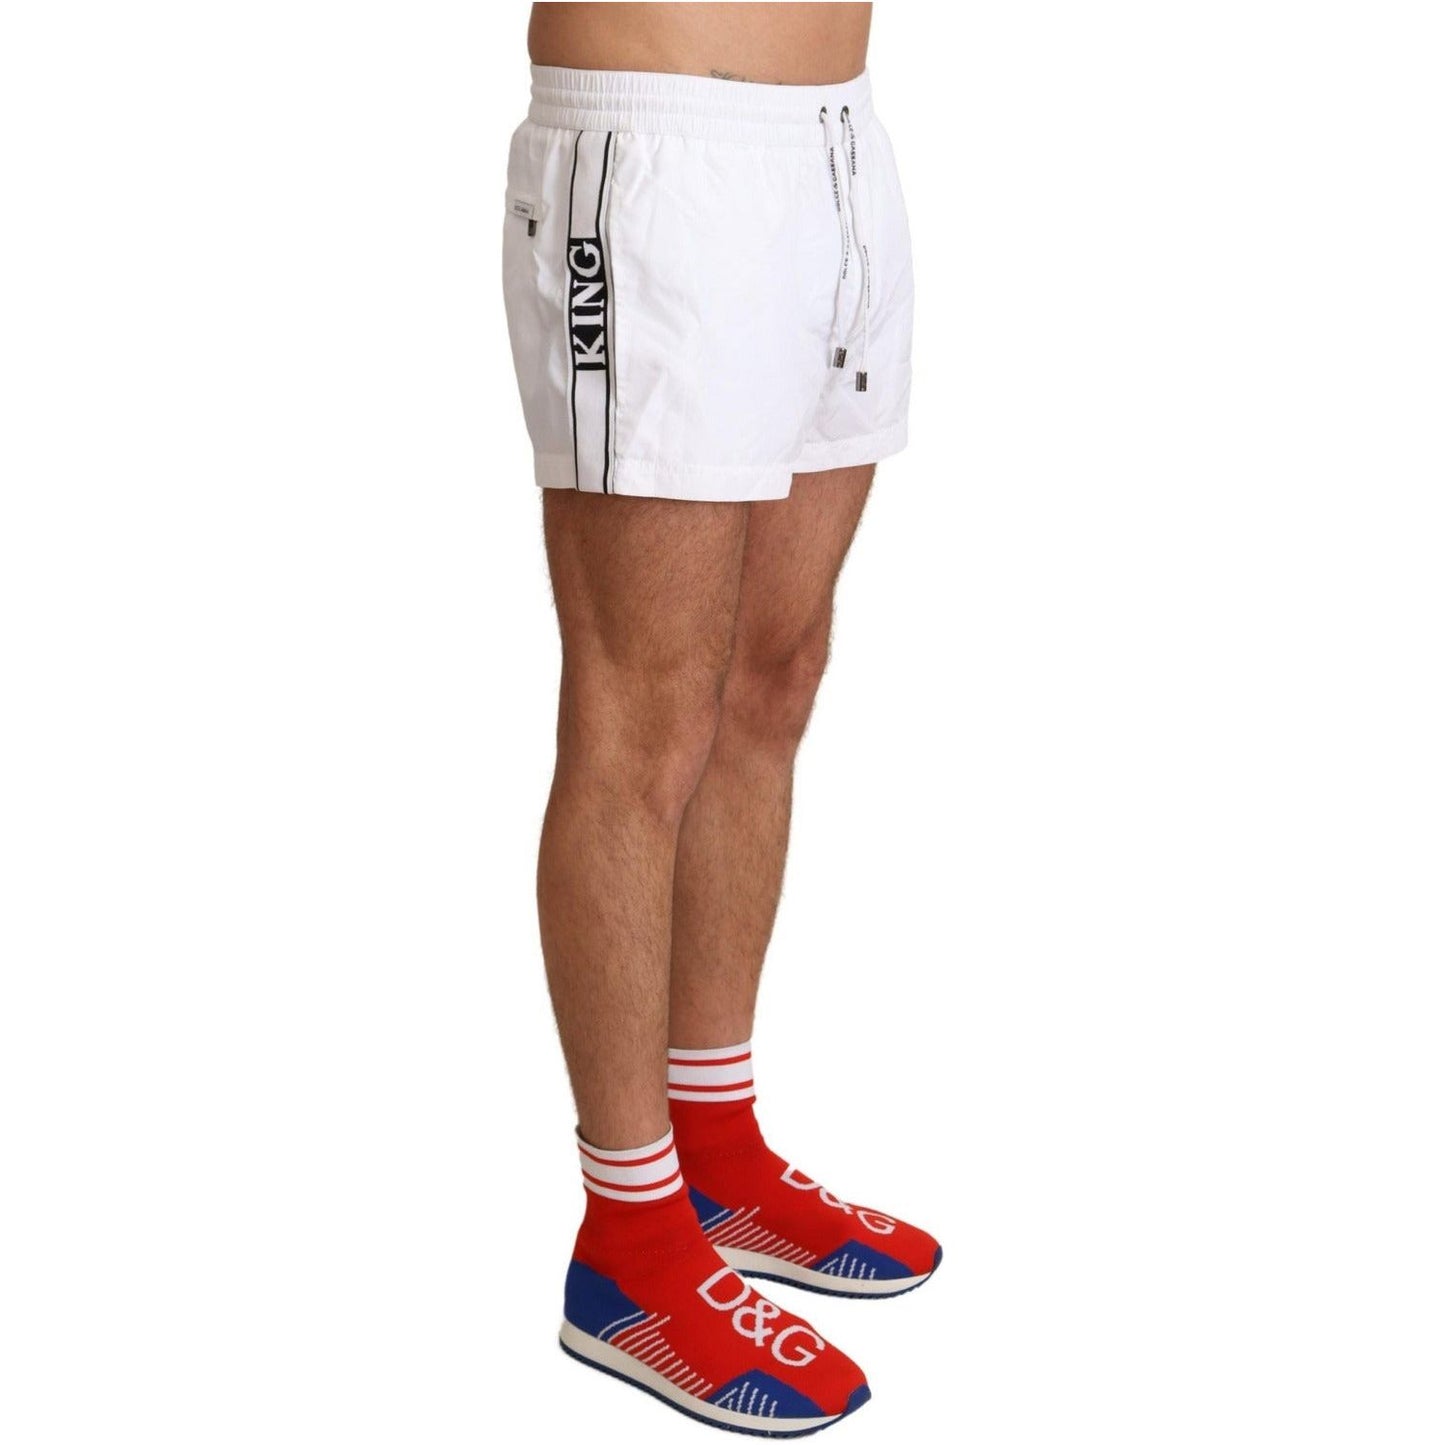 Dolce & Gabbana Elegant White KING Motive Swim Trunks white-king-mens-beachwear-swimwear-shorts IMG_2567-scaled-e205d9fc-34b.jpg